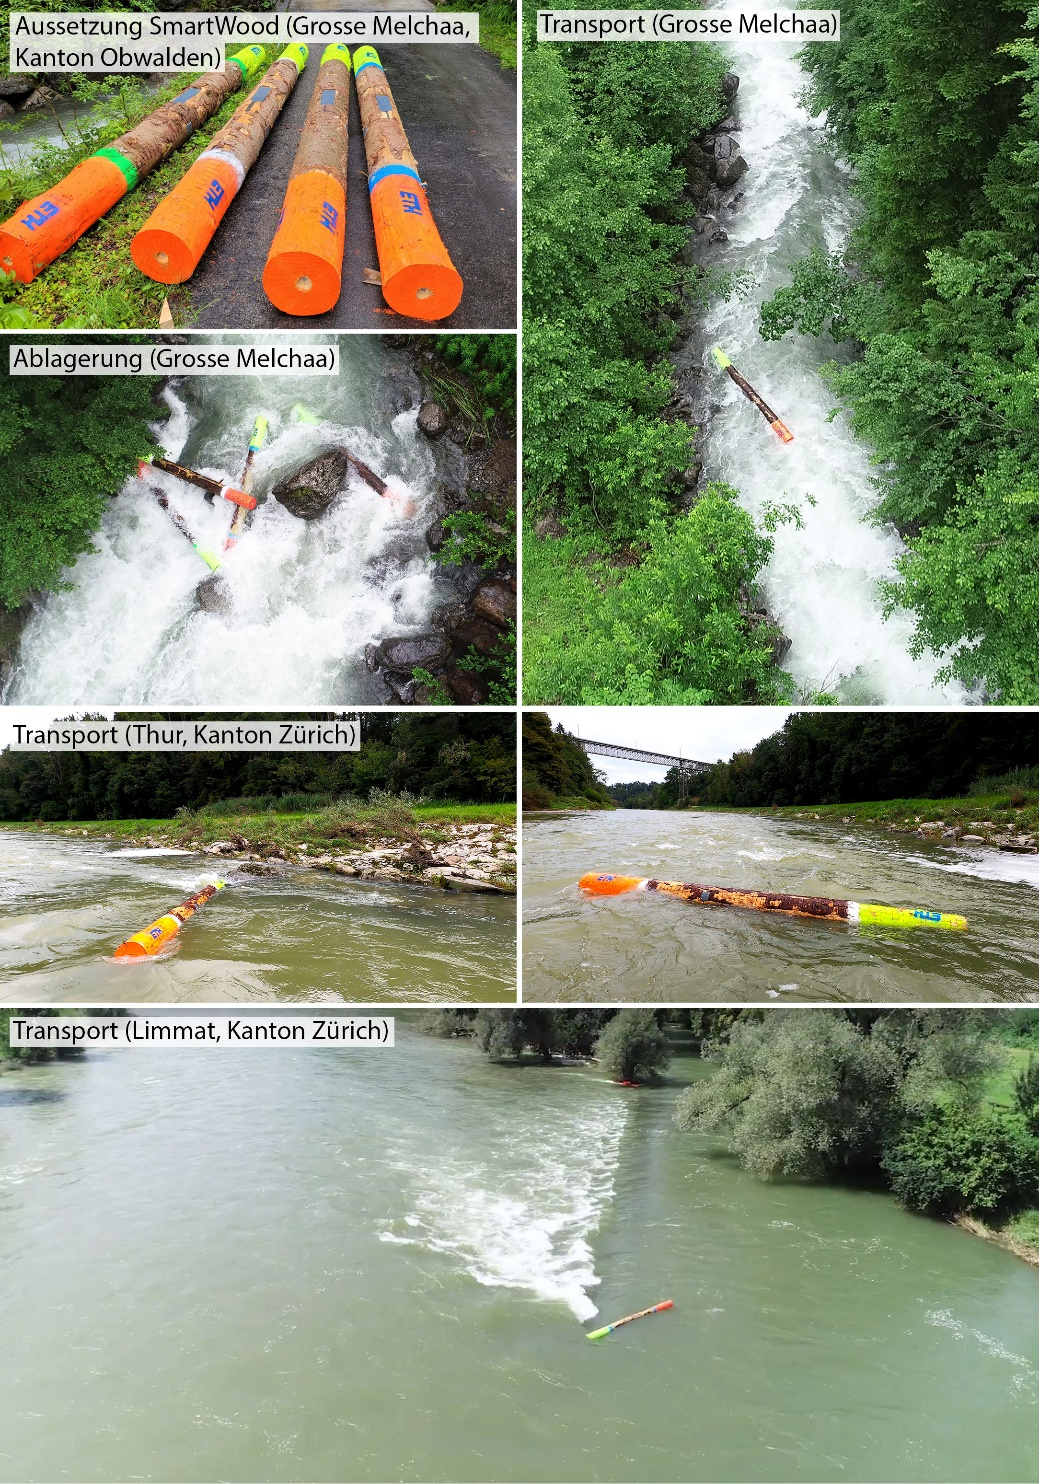 Abbildung 3: Erstmaliger Einsatz von SmartWood an drei hochwasserführenden Flüssen (Grosse Melchaa, Thur und Limmat) in der Schweiz im Sommer 2021.